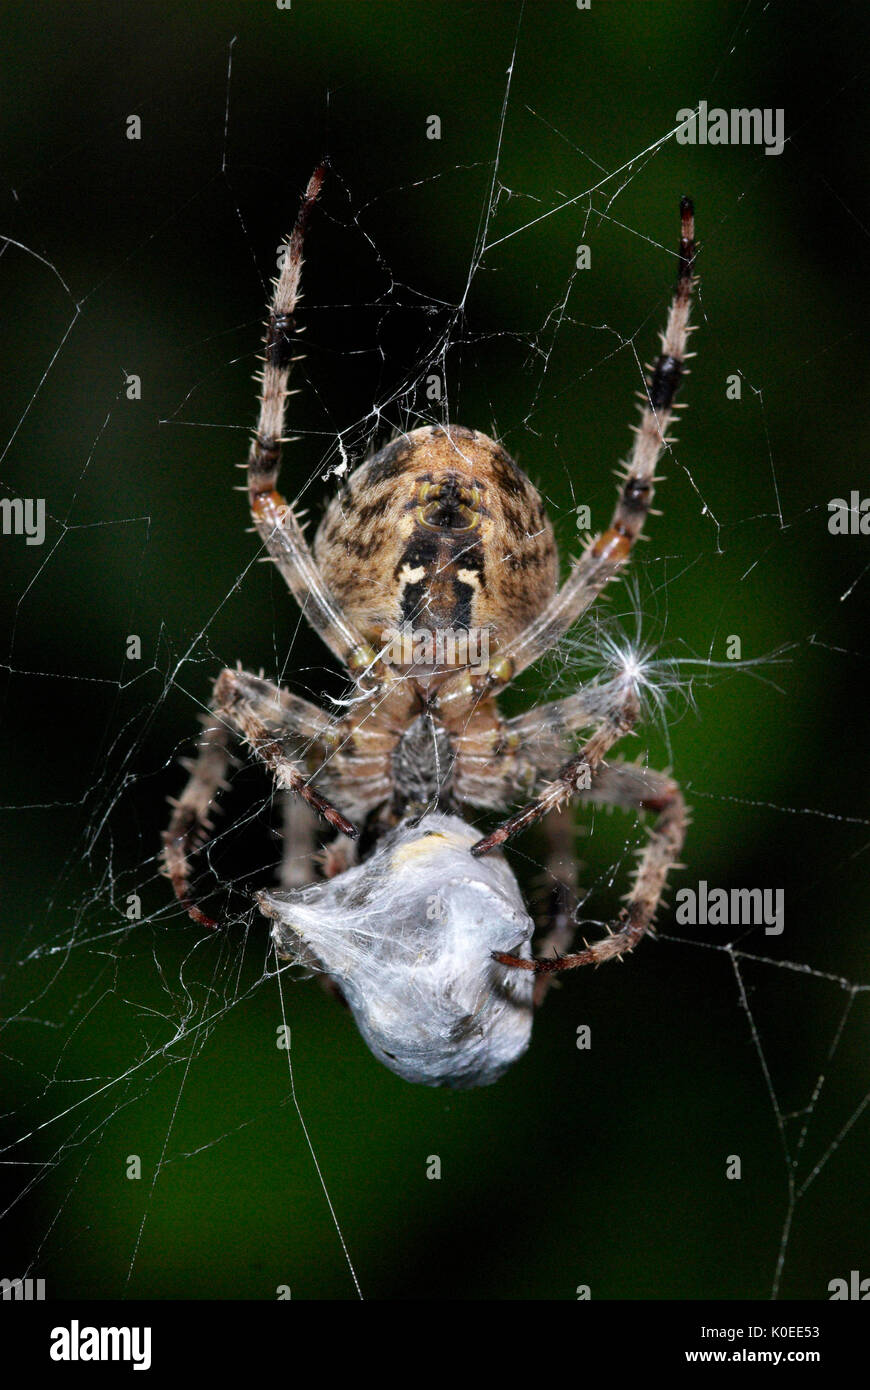 Giardino Spider, Araneus diadematus, sul web cocooning preda vittima, con fili di seta, catturati, predation, predator Foto Stock